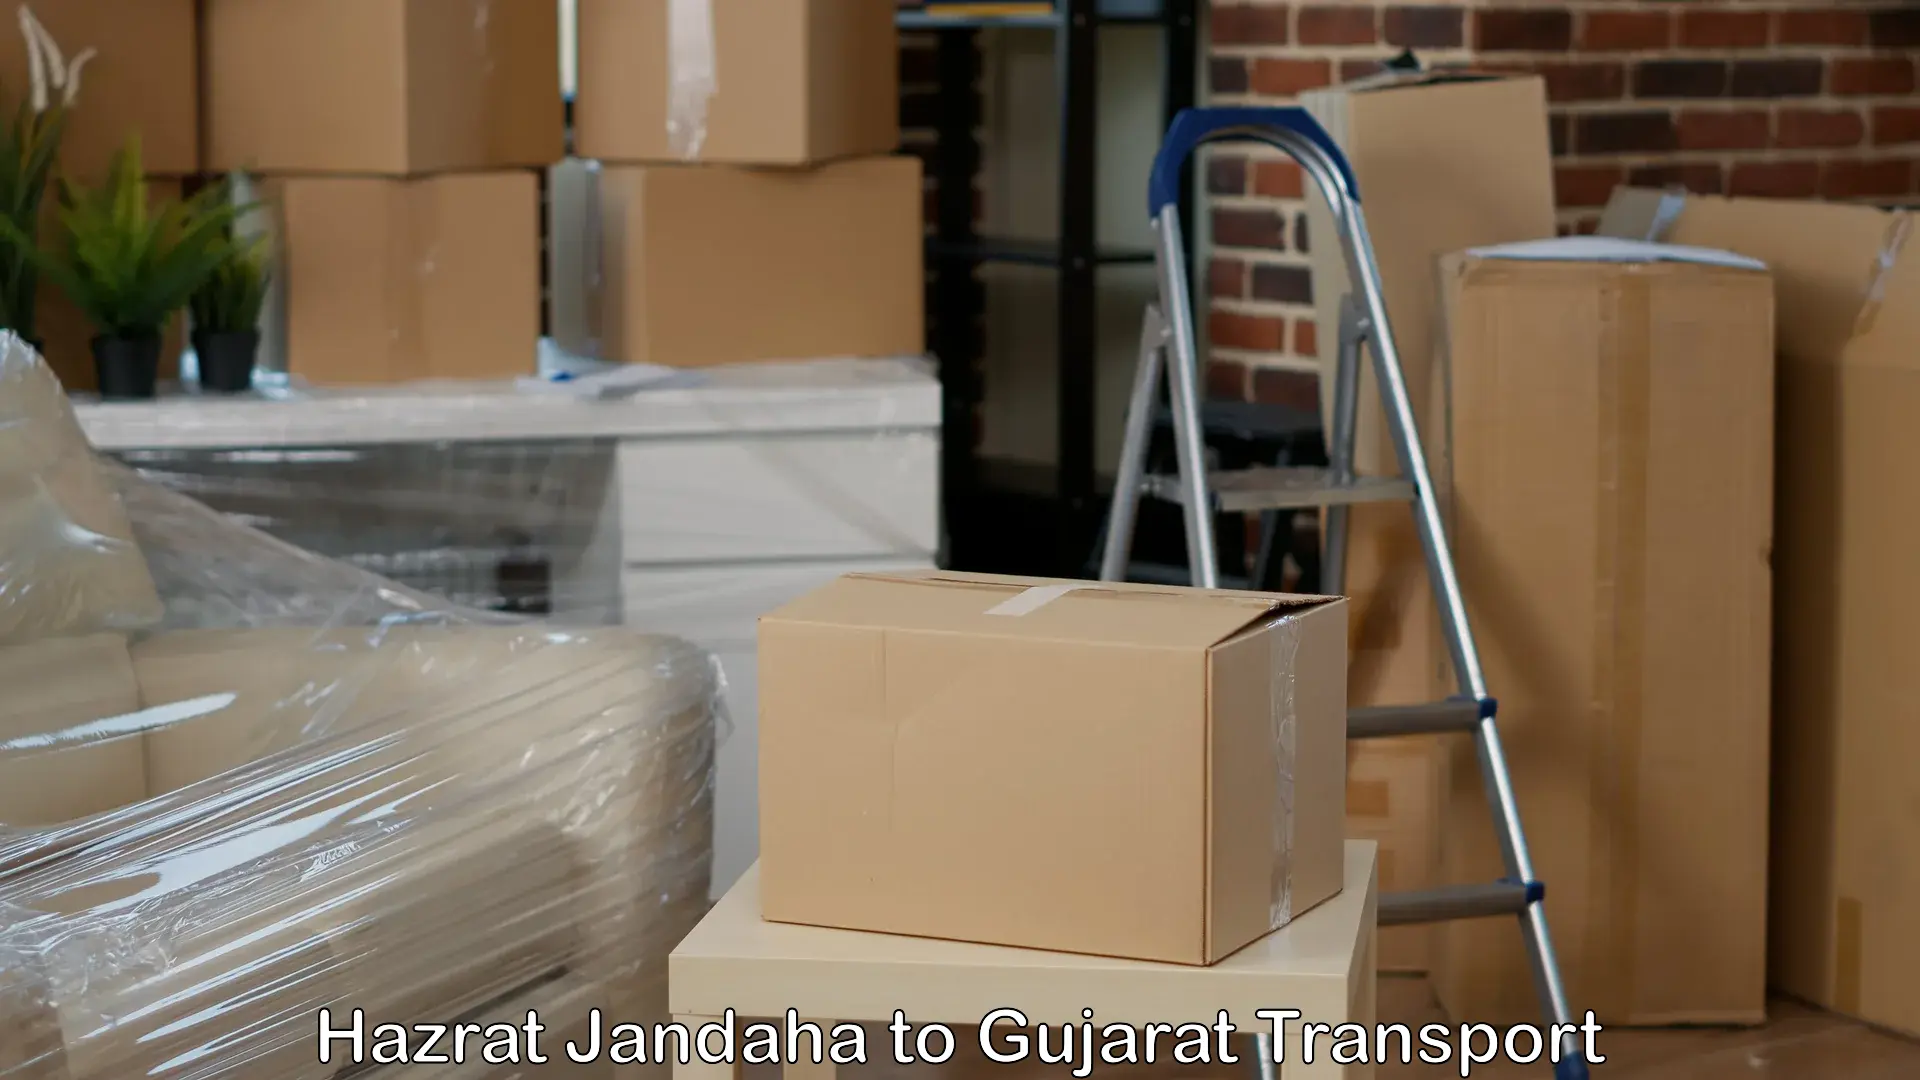 Truck transport companies in India Hazrat Jandaha to Vadnagar